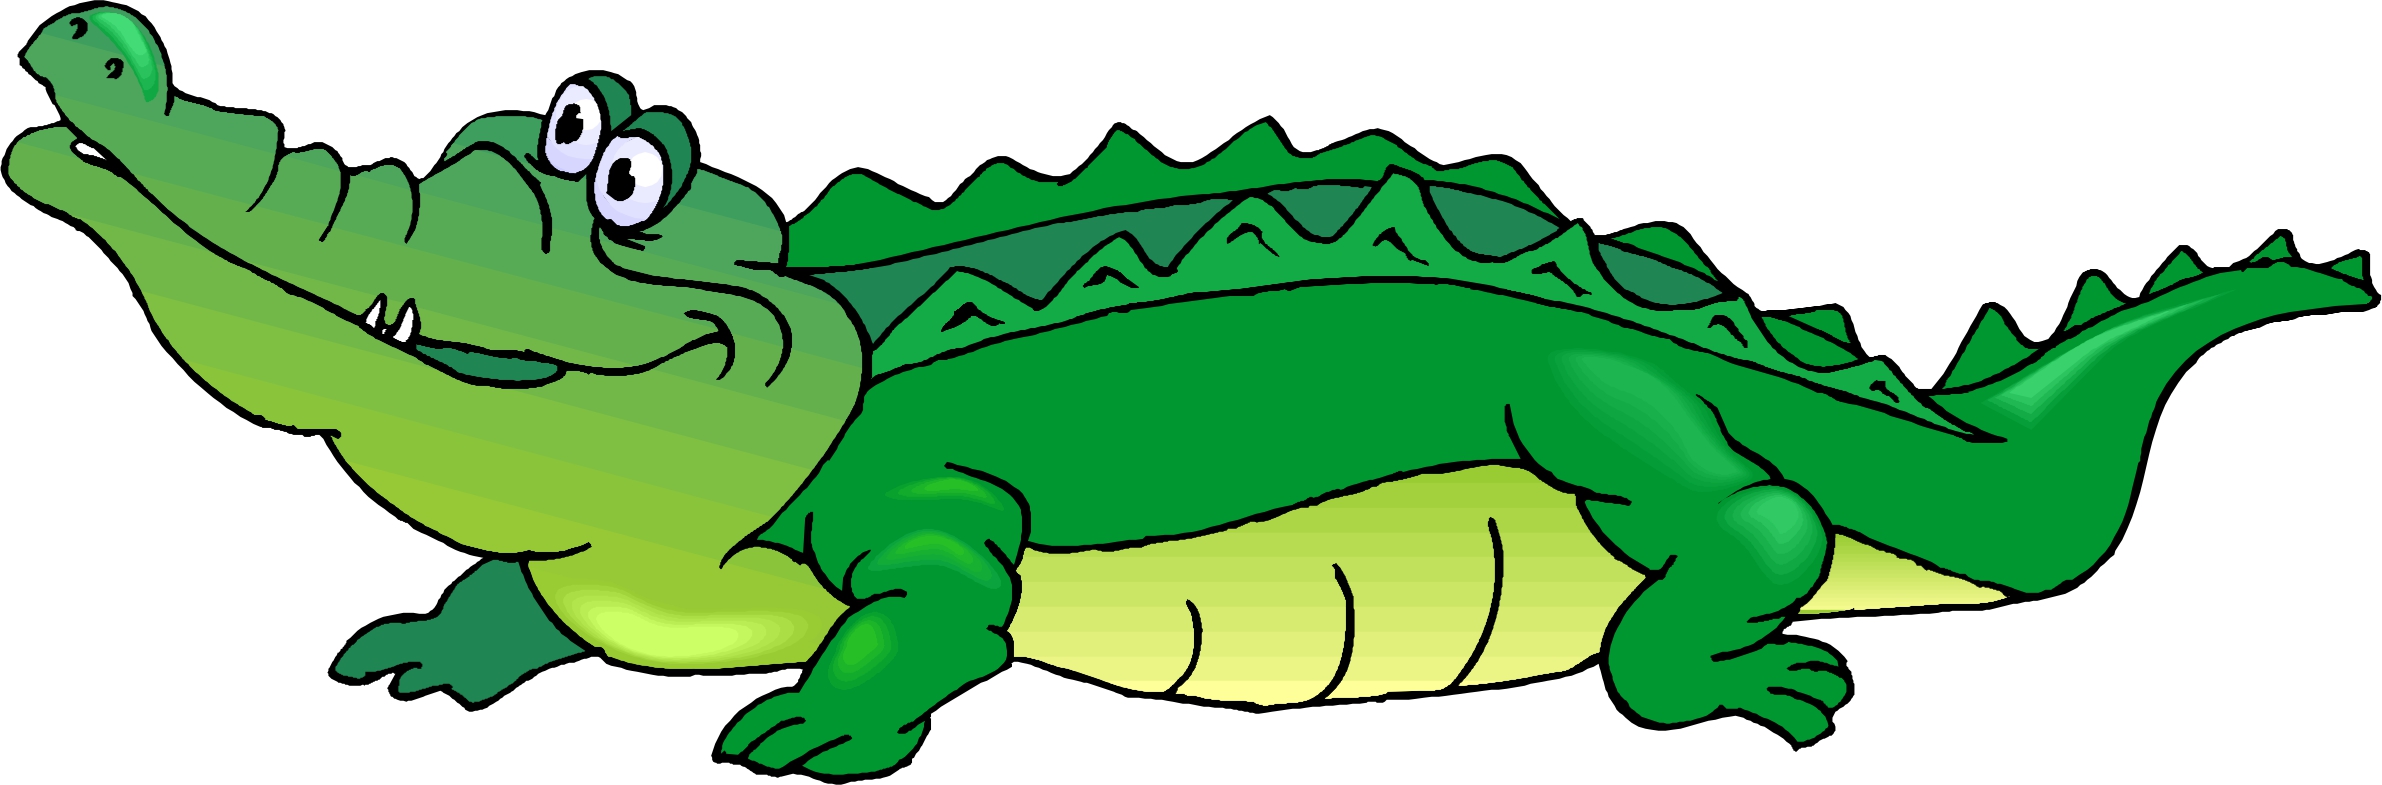 Crocodile Clip Art ,Free Clipart Image,green alligator